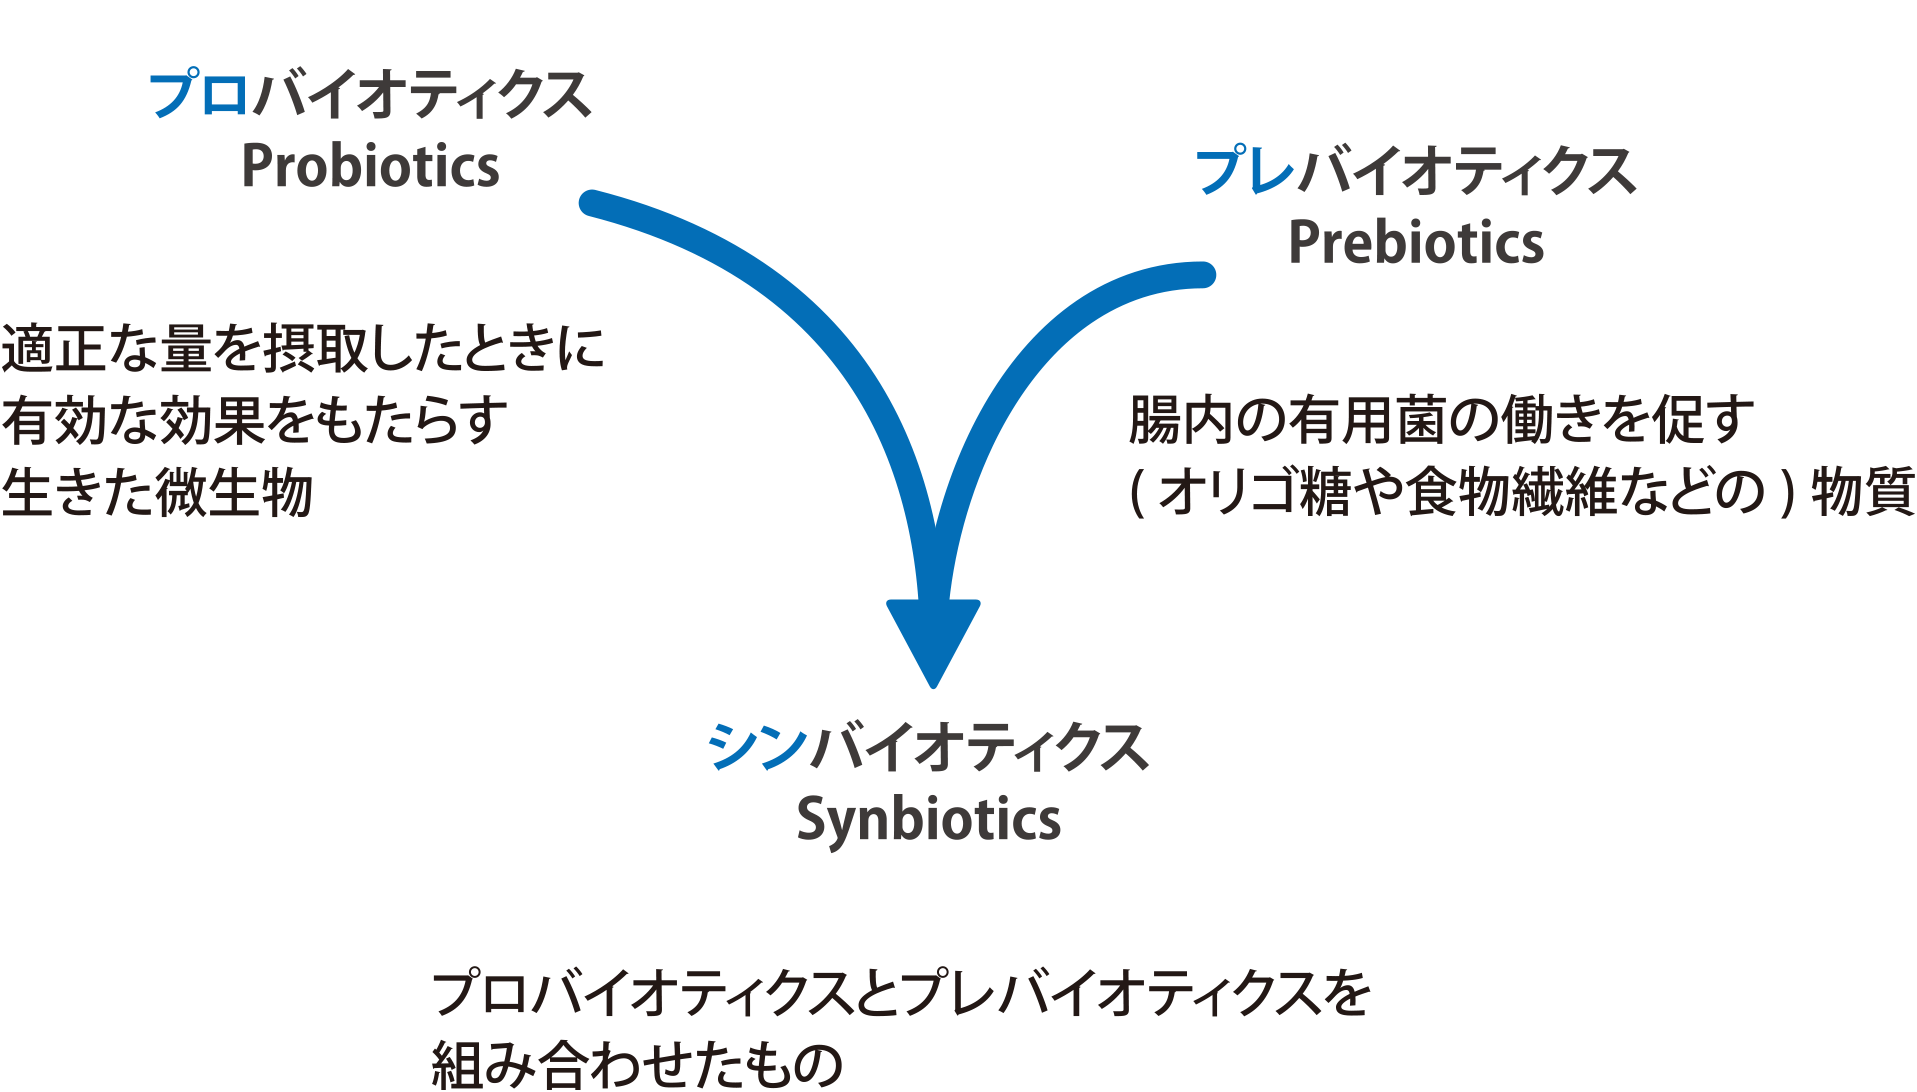 腸活 無添加 酵素飲料 ハイパー酵素 1L 生活習慣病予防 新品 送料無料酵素